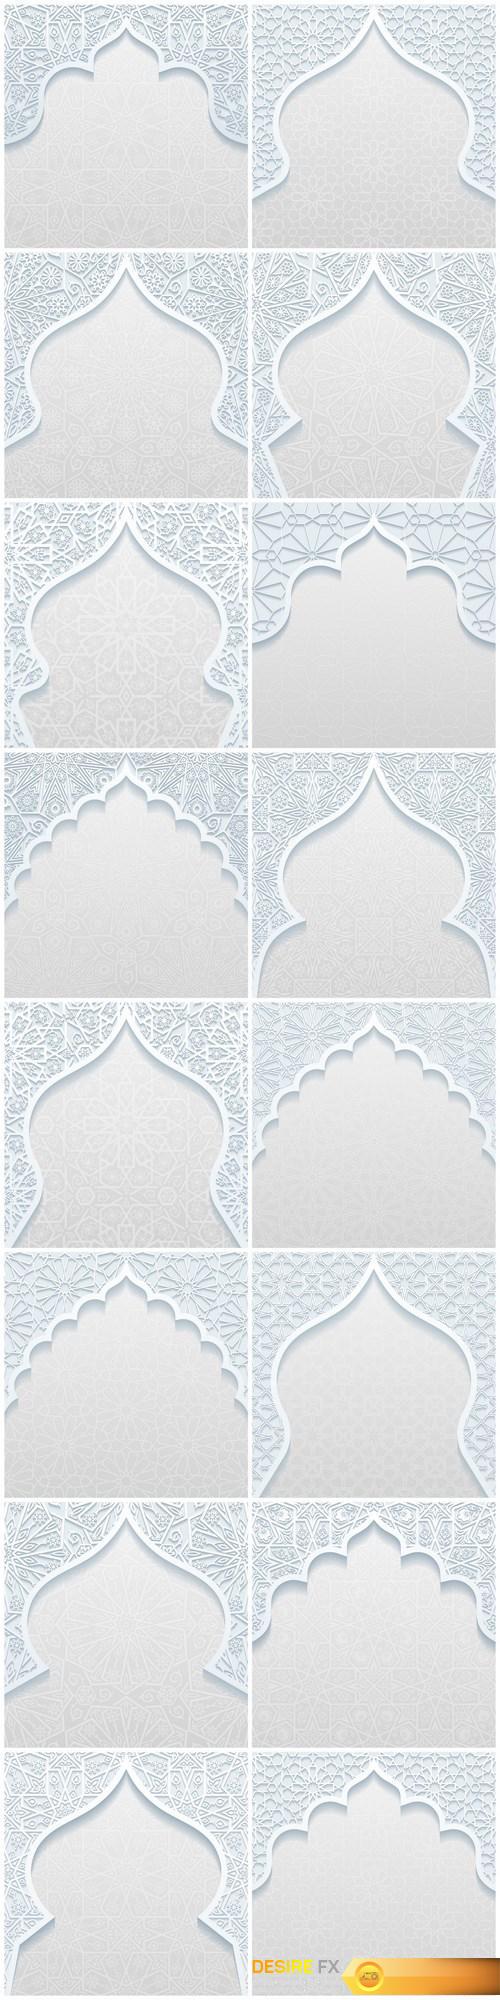 Arabic decoration, ornamen and design - 16xEPS